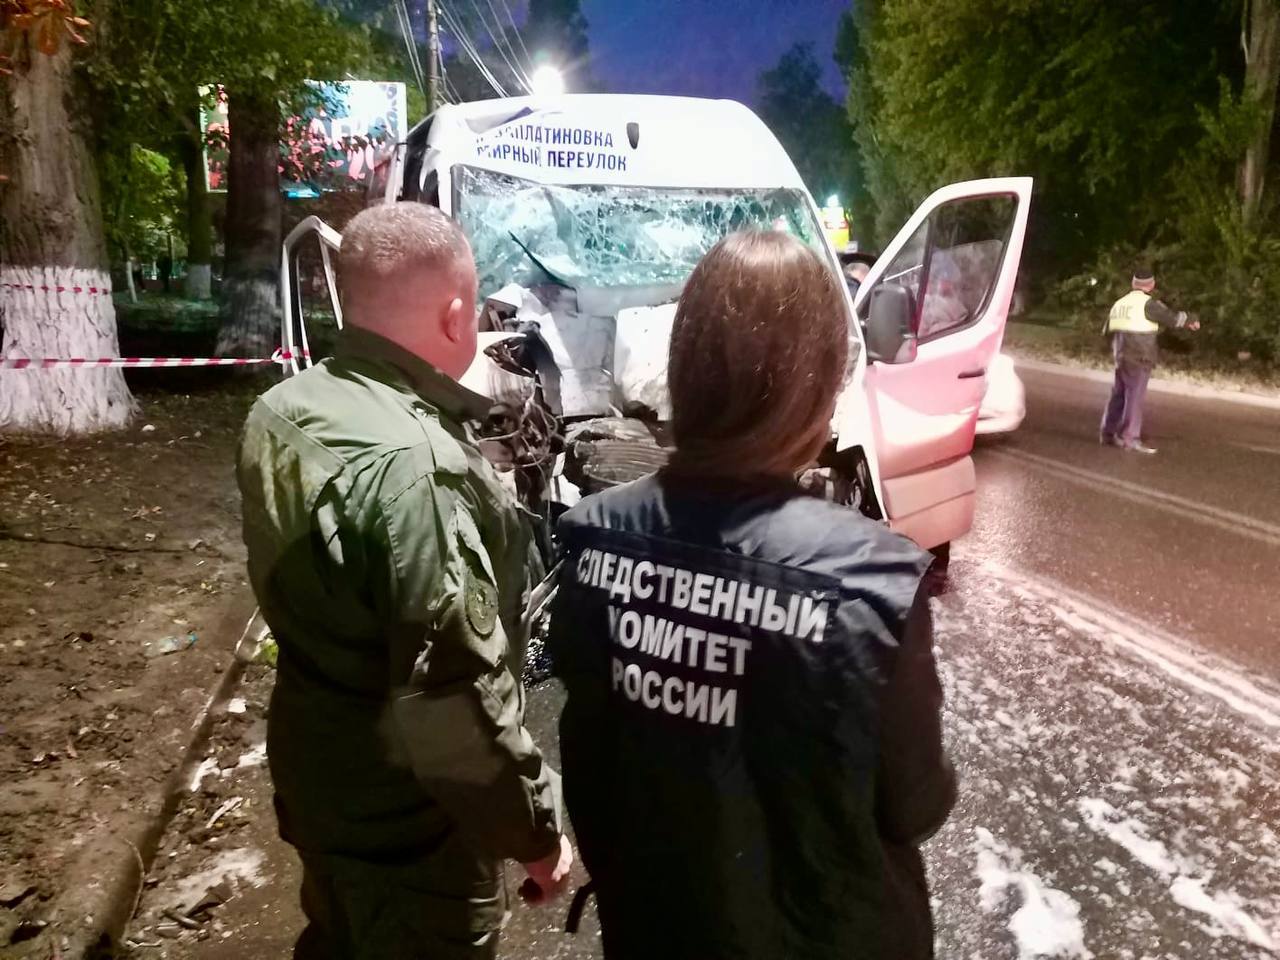 СМИ: Четыре человека погибли в результате столкновения поезда с автомобилем в Крыму